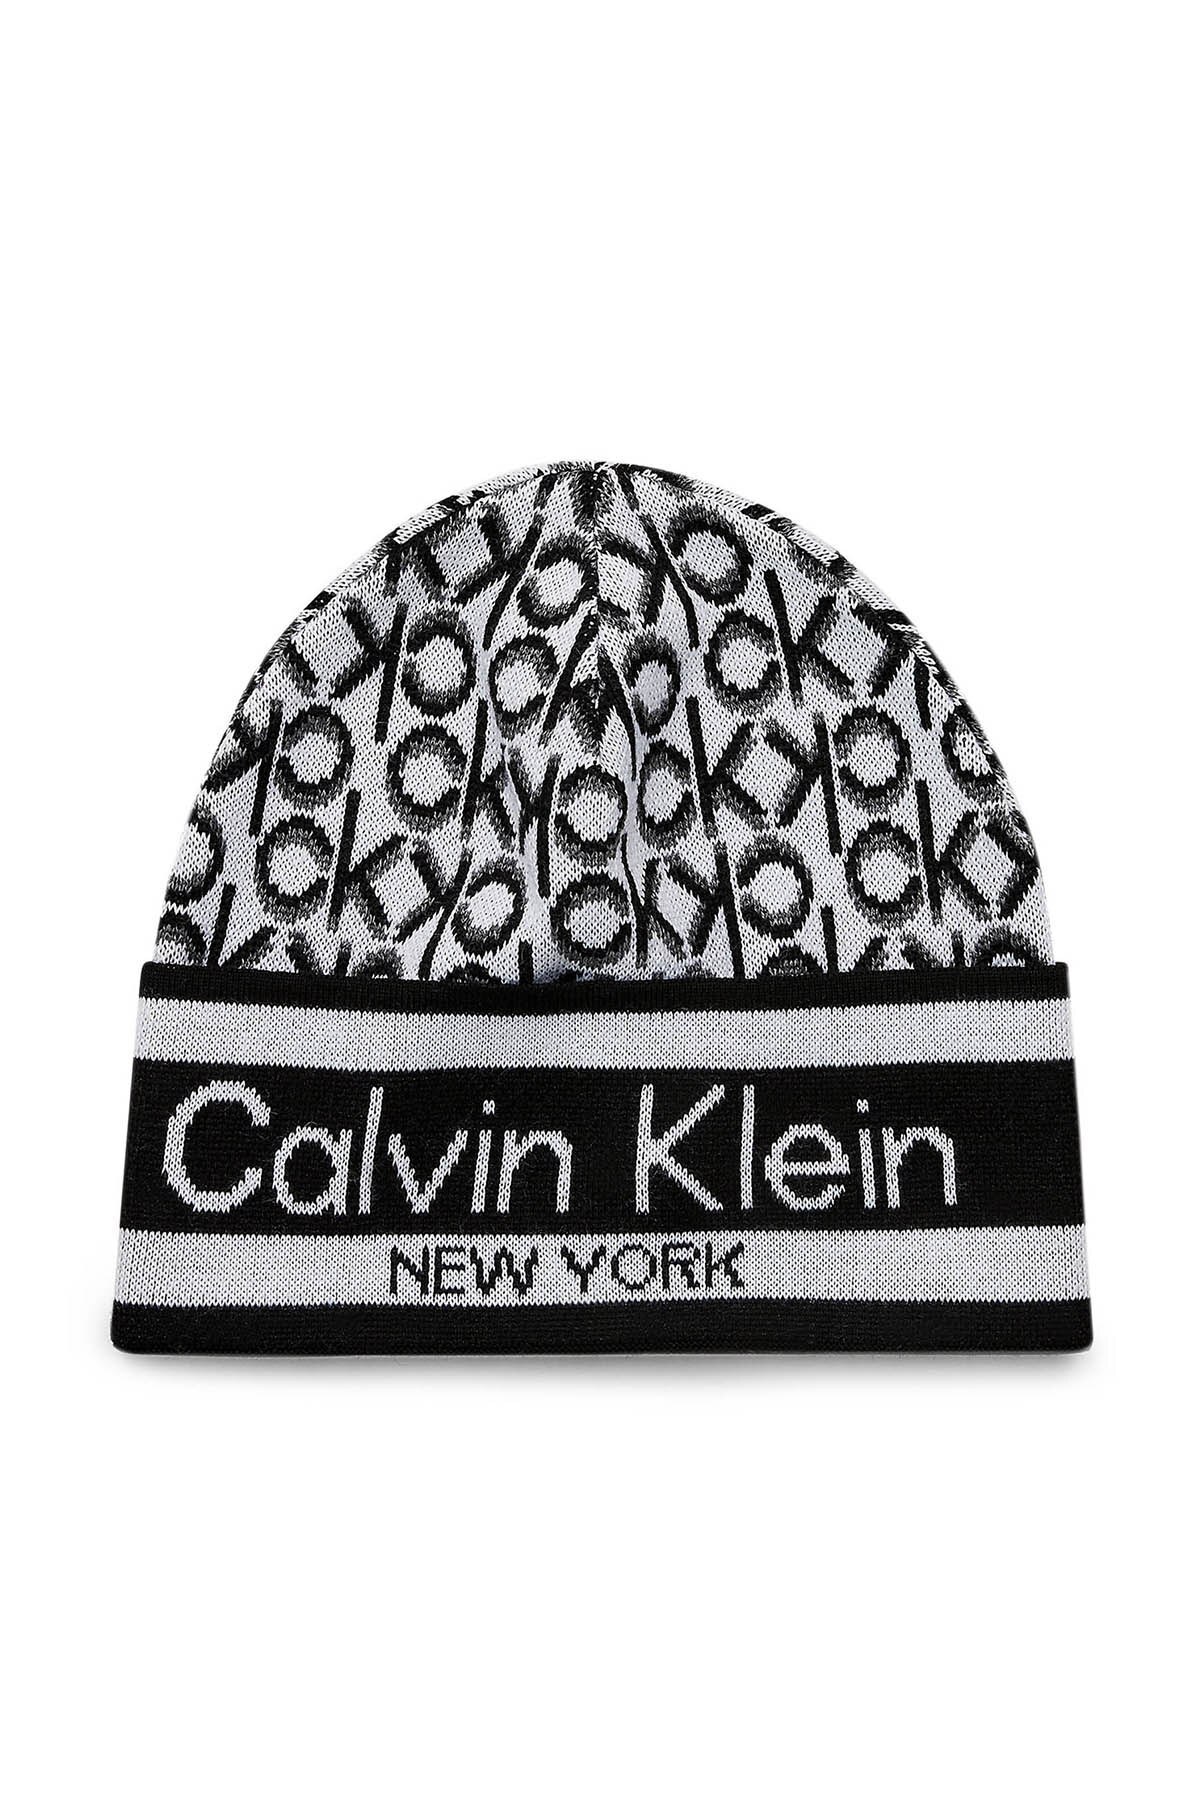 Calvin Klein Logo Baskılı % 100 Pamuk Kadın Bere K60K607296 0GX GRİ